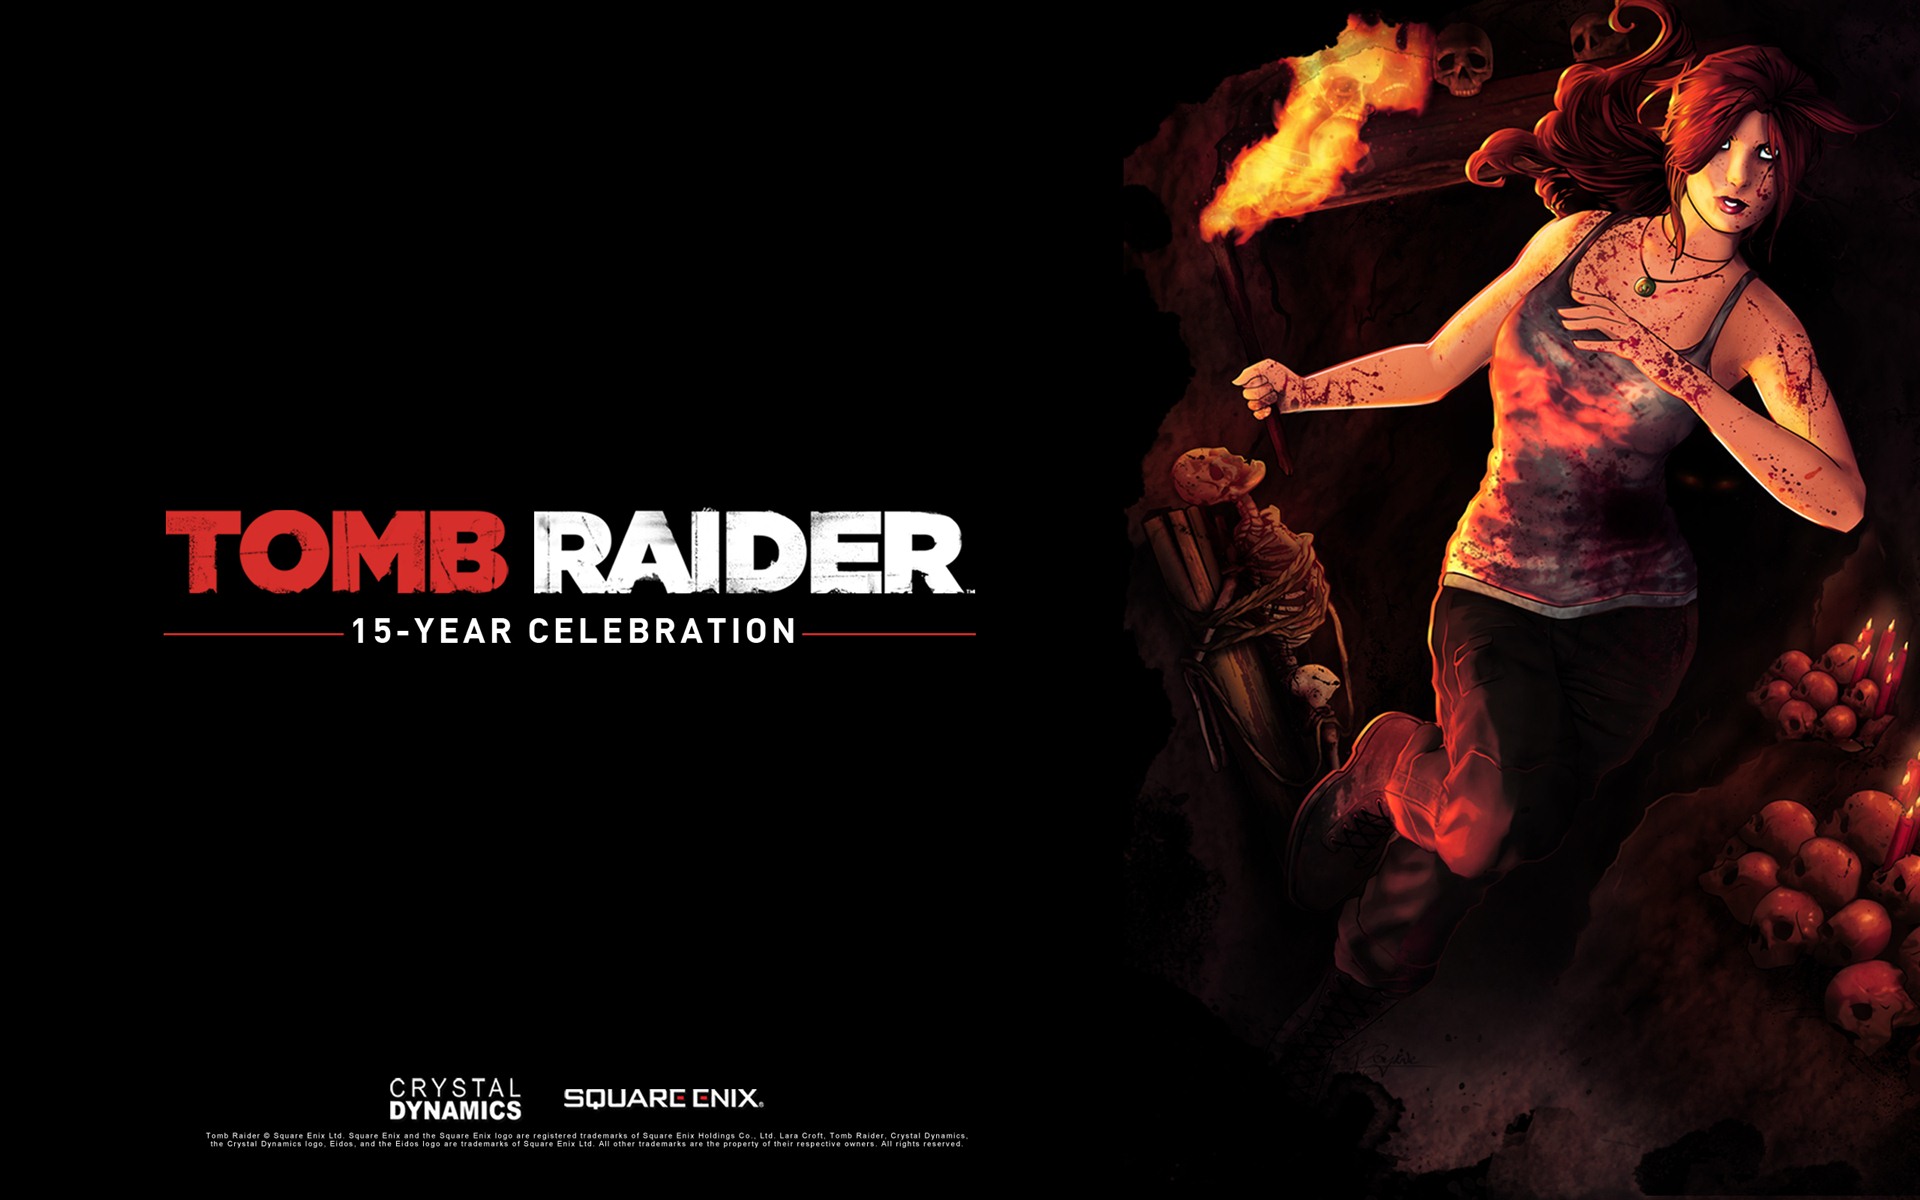 Tomb Raider 15-Year Celebration 古墓丽影15周年纪念版 高清壁纸4 - 1920x1200